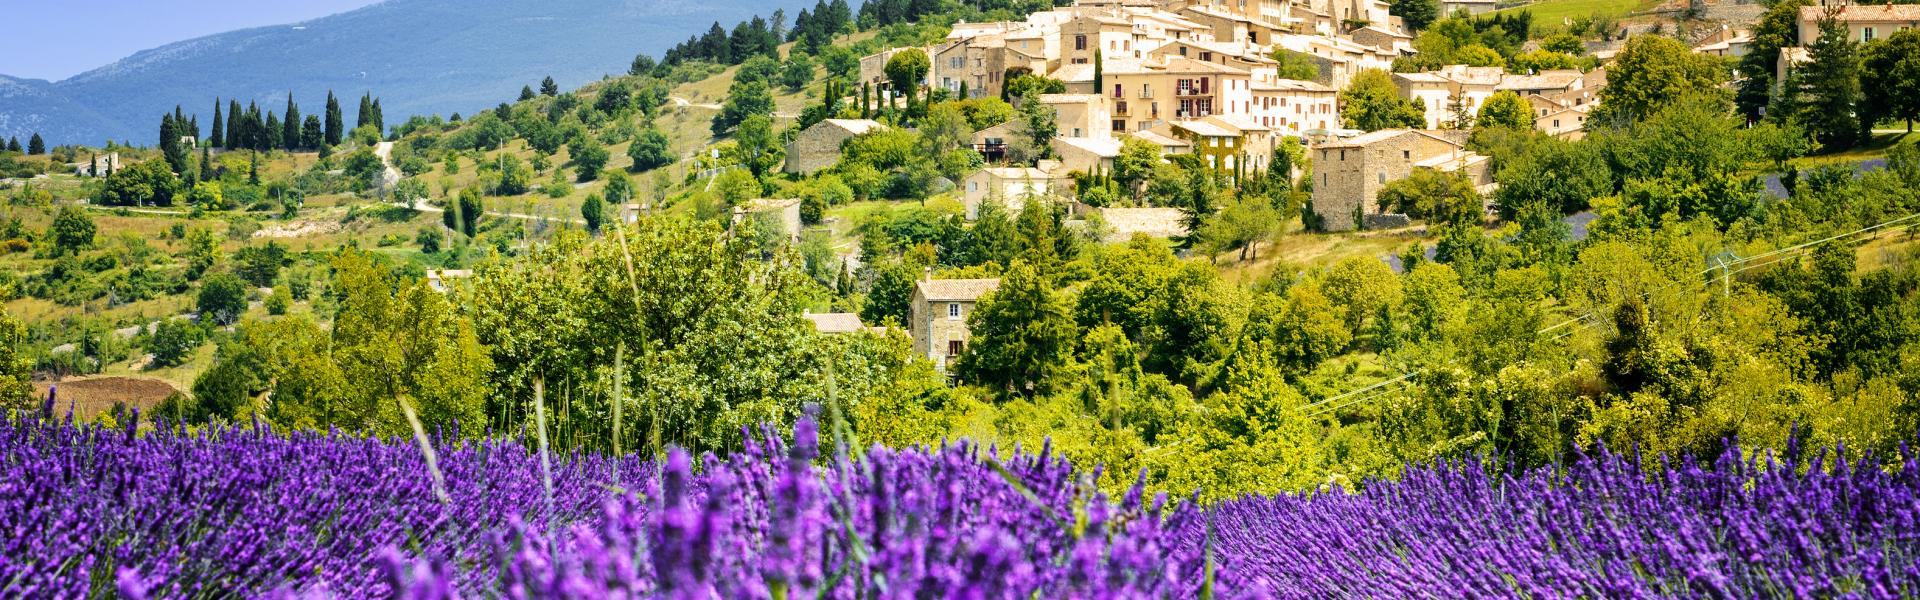 Locations de vacances et appartements dans la Drôme Provençale - Wimdu